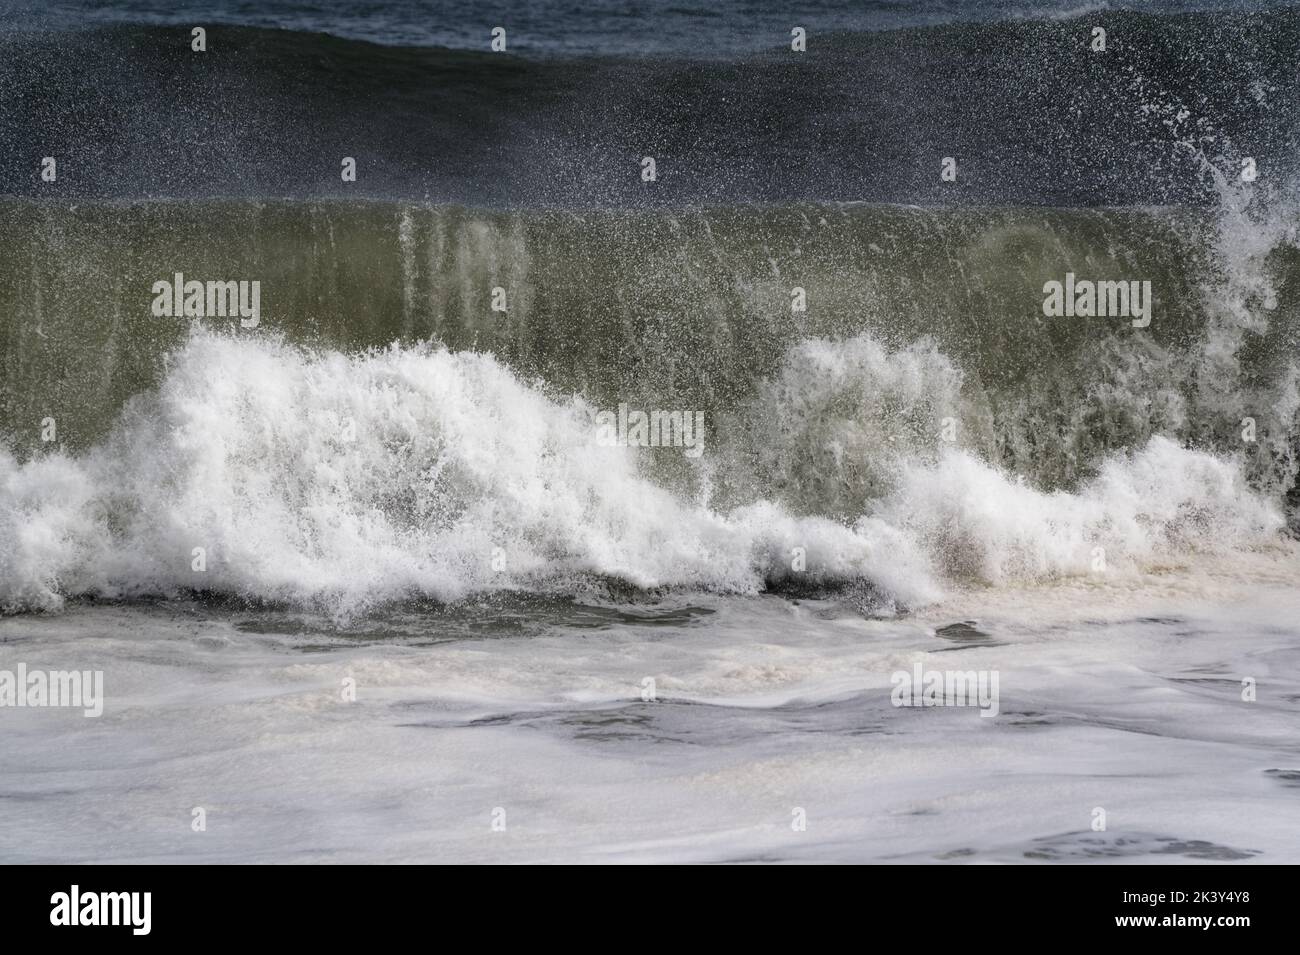 Les vagues déferlent, puis s'écrachent sur la rive où elles s'écraseront, jetant des jets dans l'air. Banque D'Images